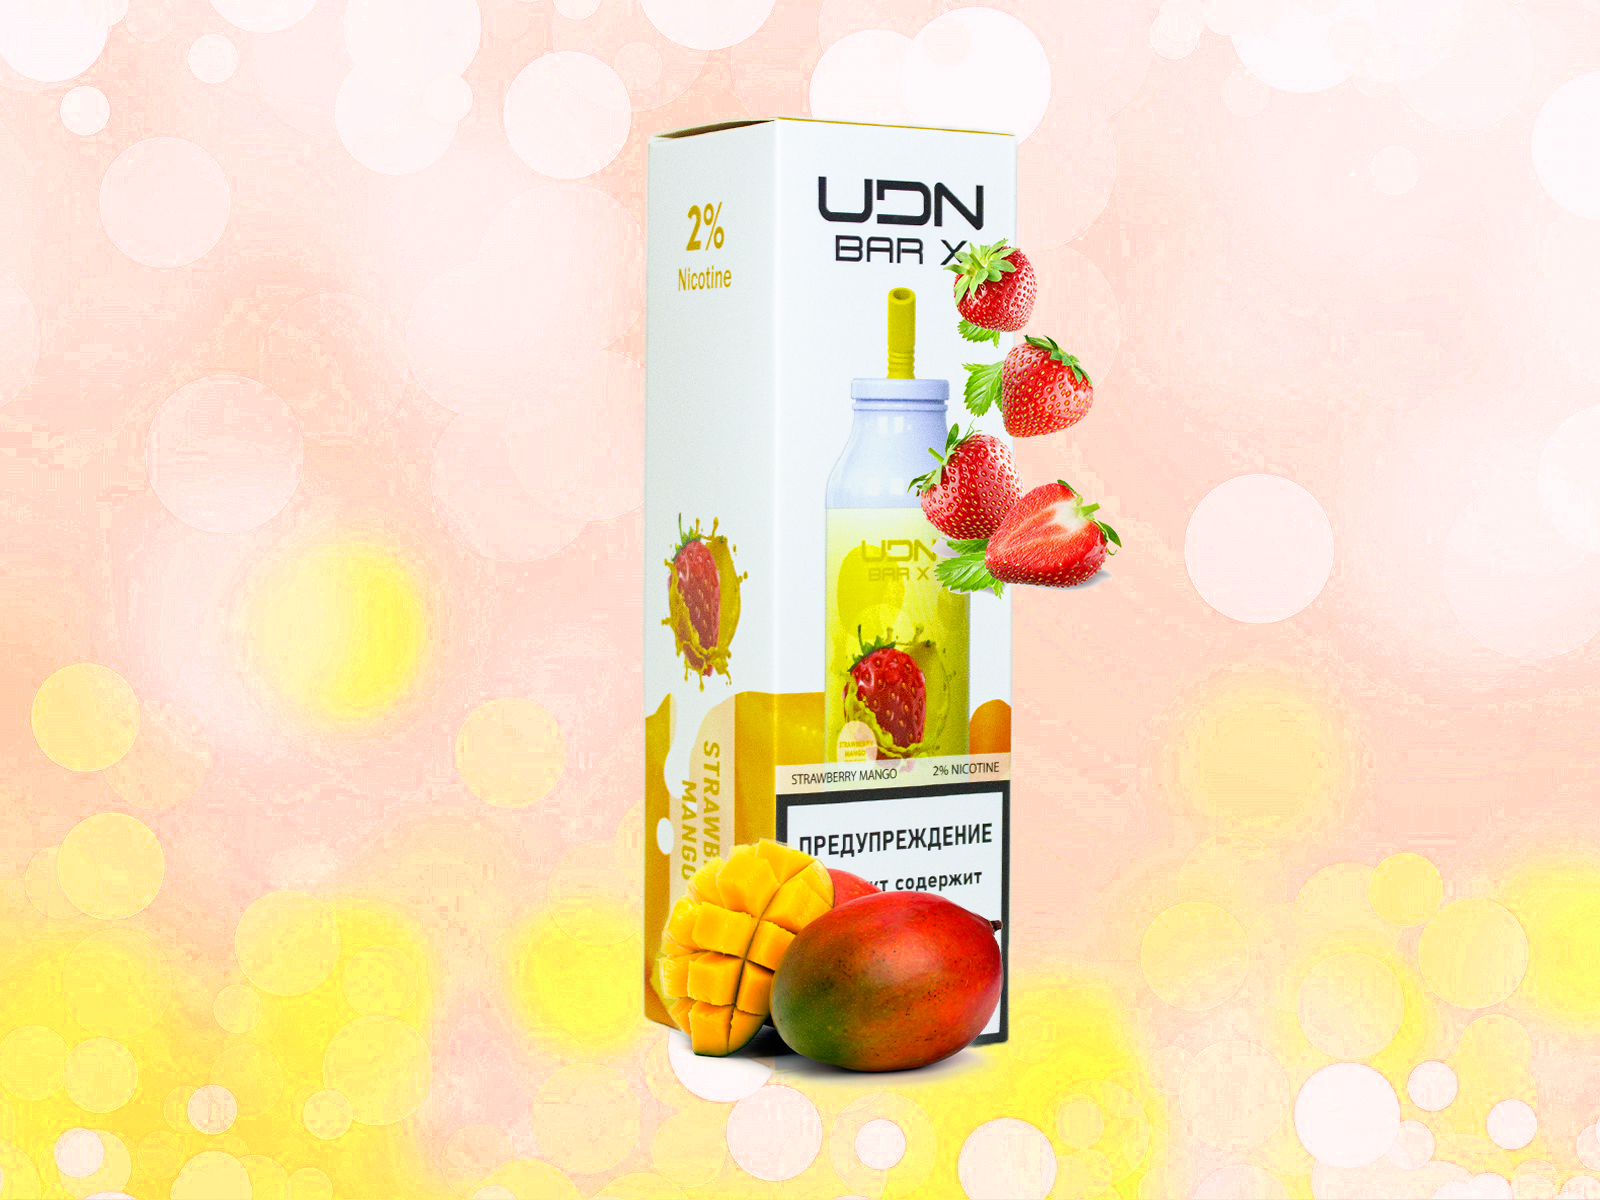 UDN BAR X 7000 / Strawberry mango